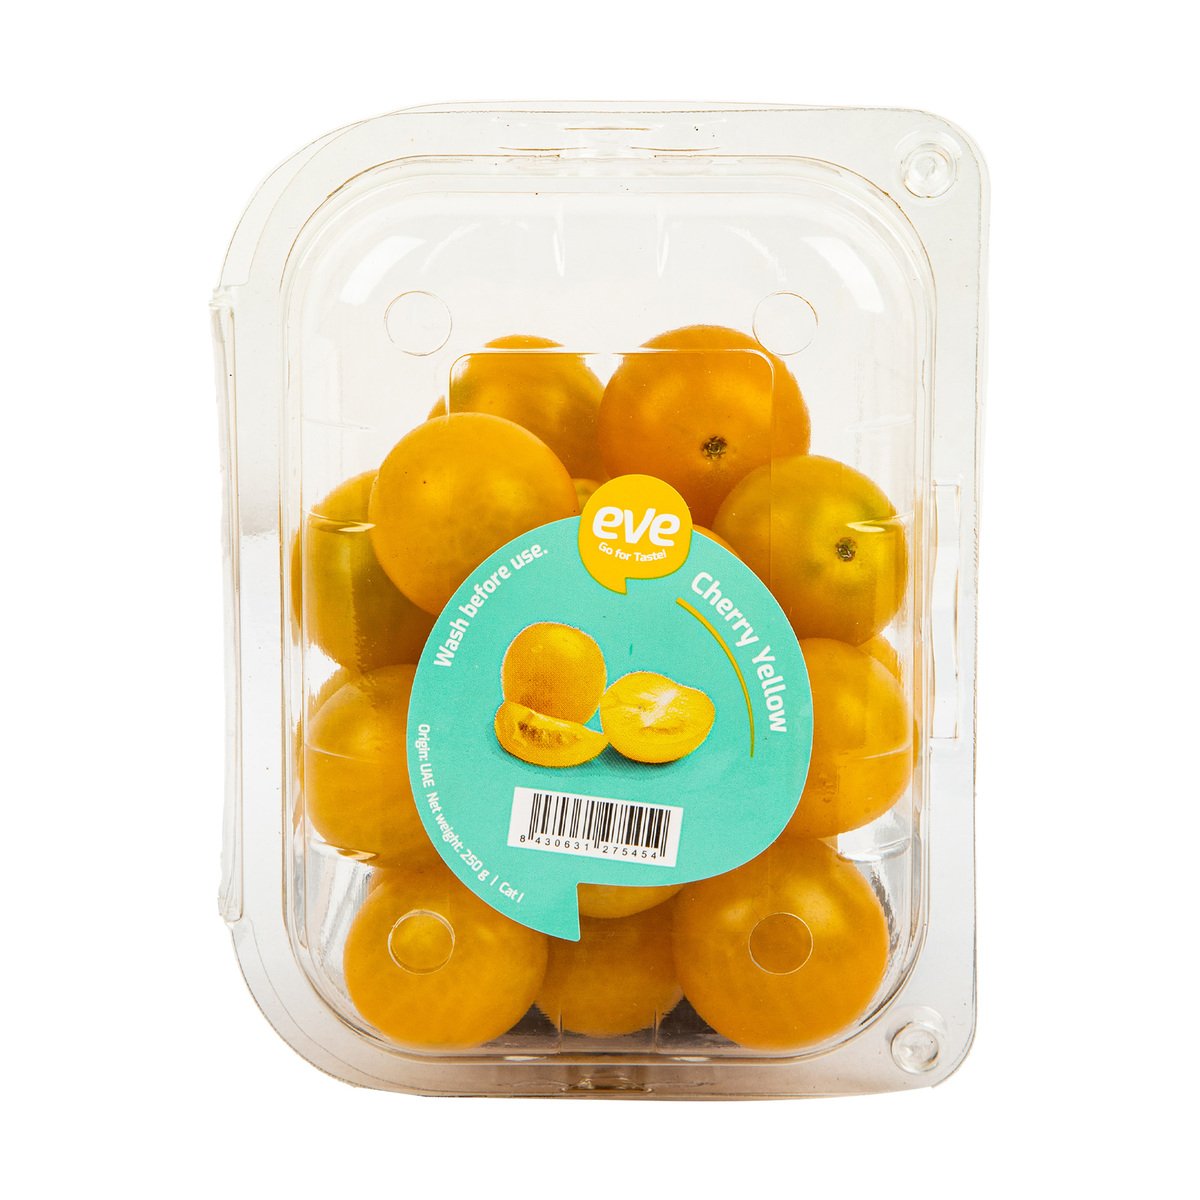 Tomato Cherry Yellow UAE 1 pkt